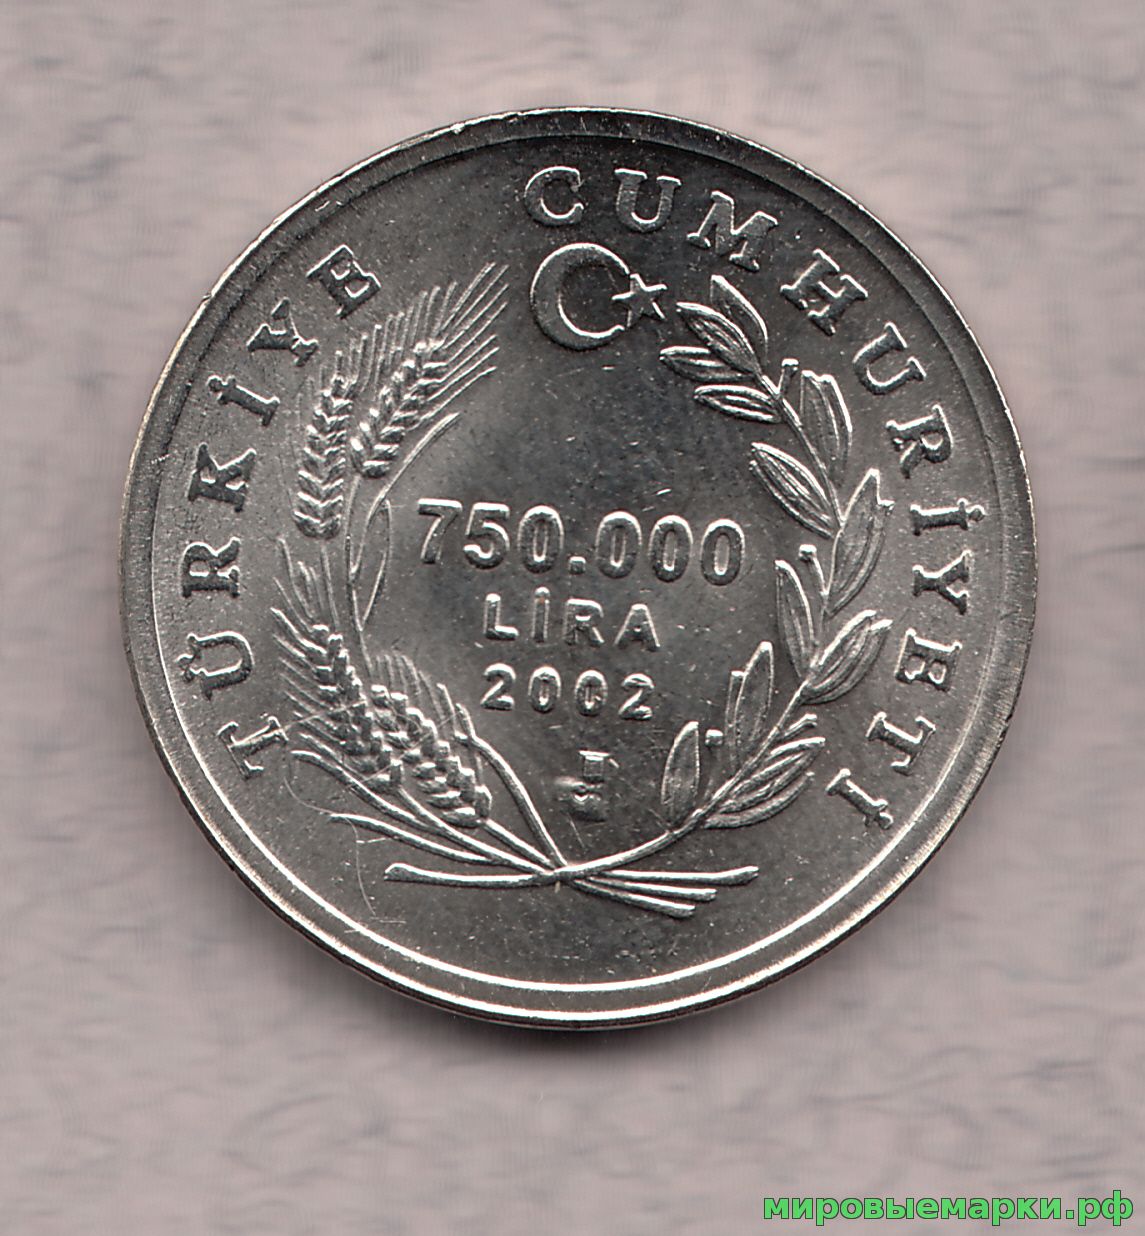 Турция 2002 г. 750000 лир, UNC(мешковые)